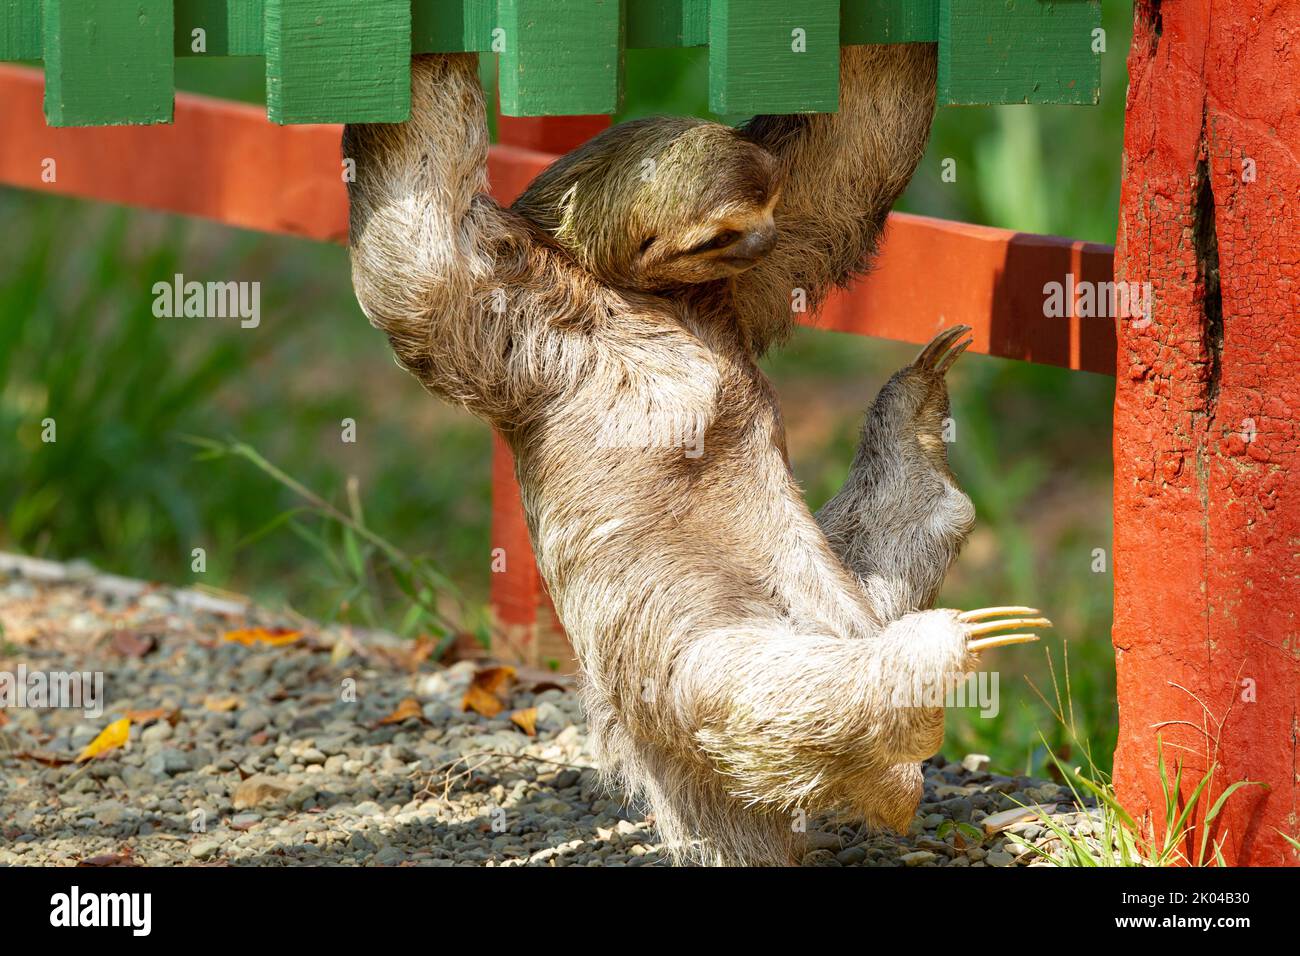 Sloth a tre punte (Bradypus infuscatus) che sale lungo il fondo di una recinzione, a pochi centimetri dal suolo, per andare da un albero all'altro Foto Stock